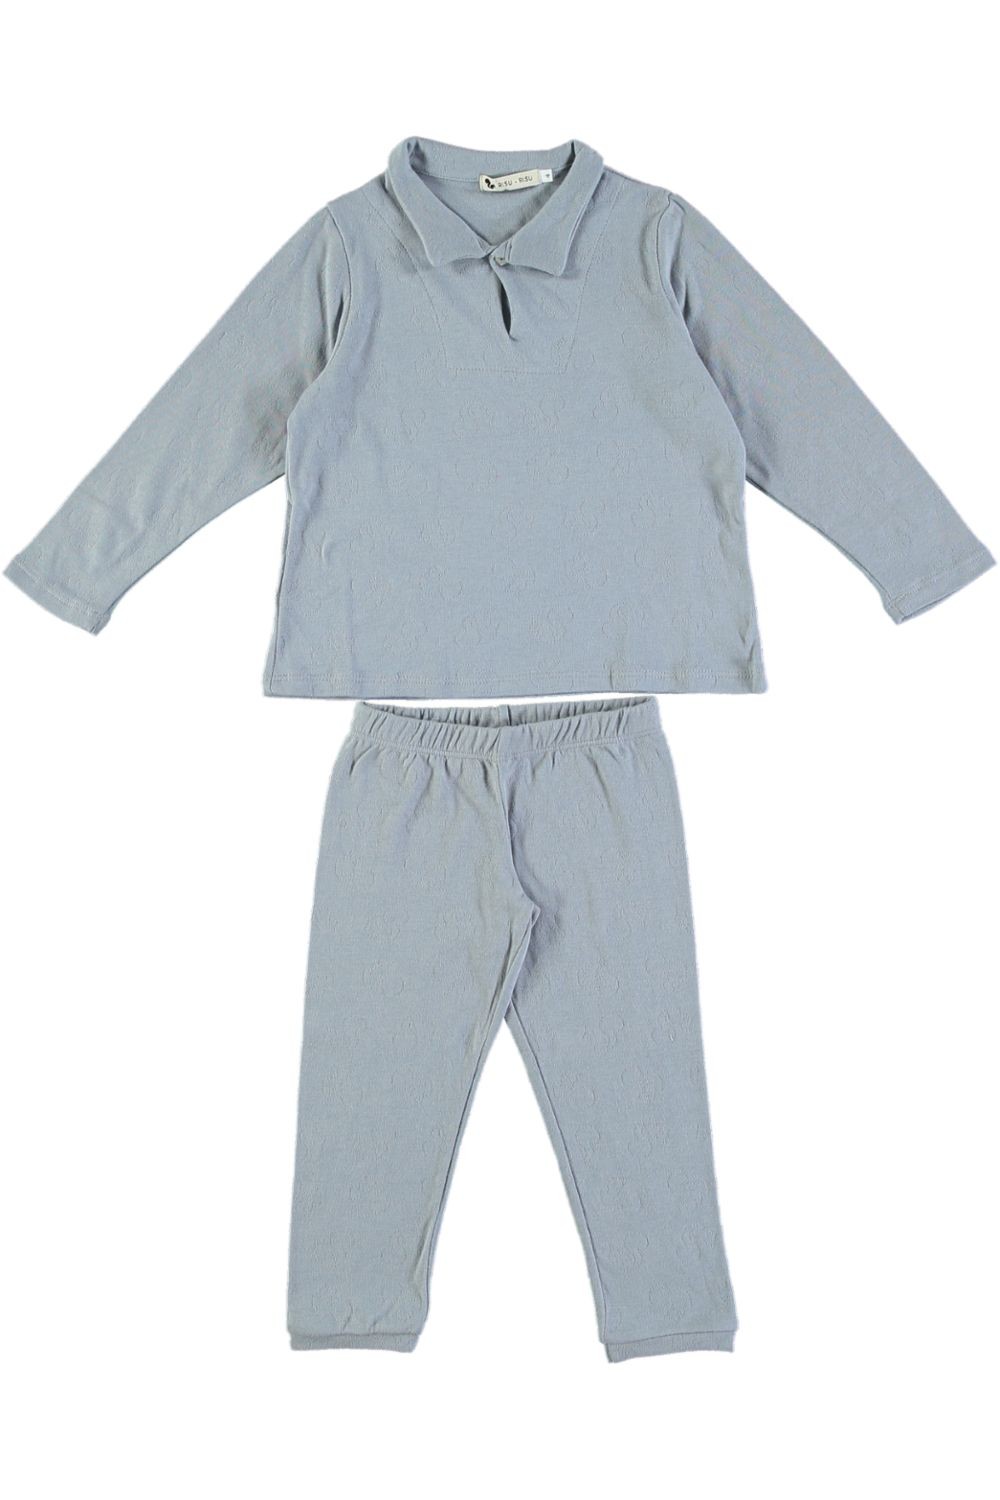 Pyjama garçon Nino coton bleu